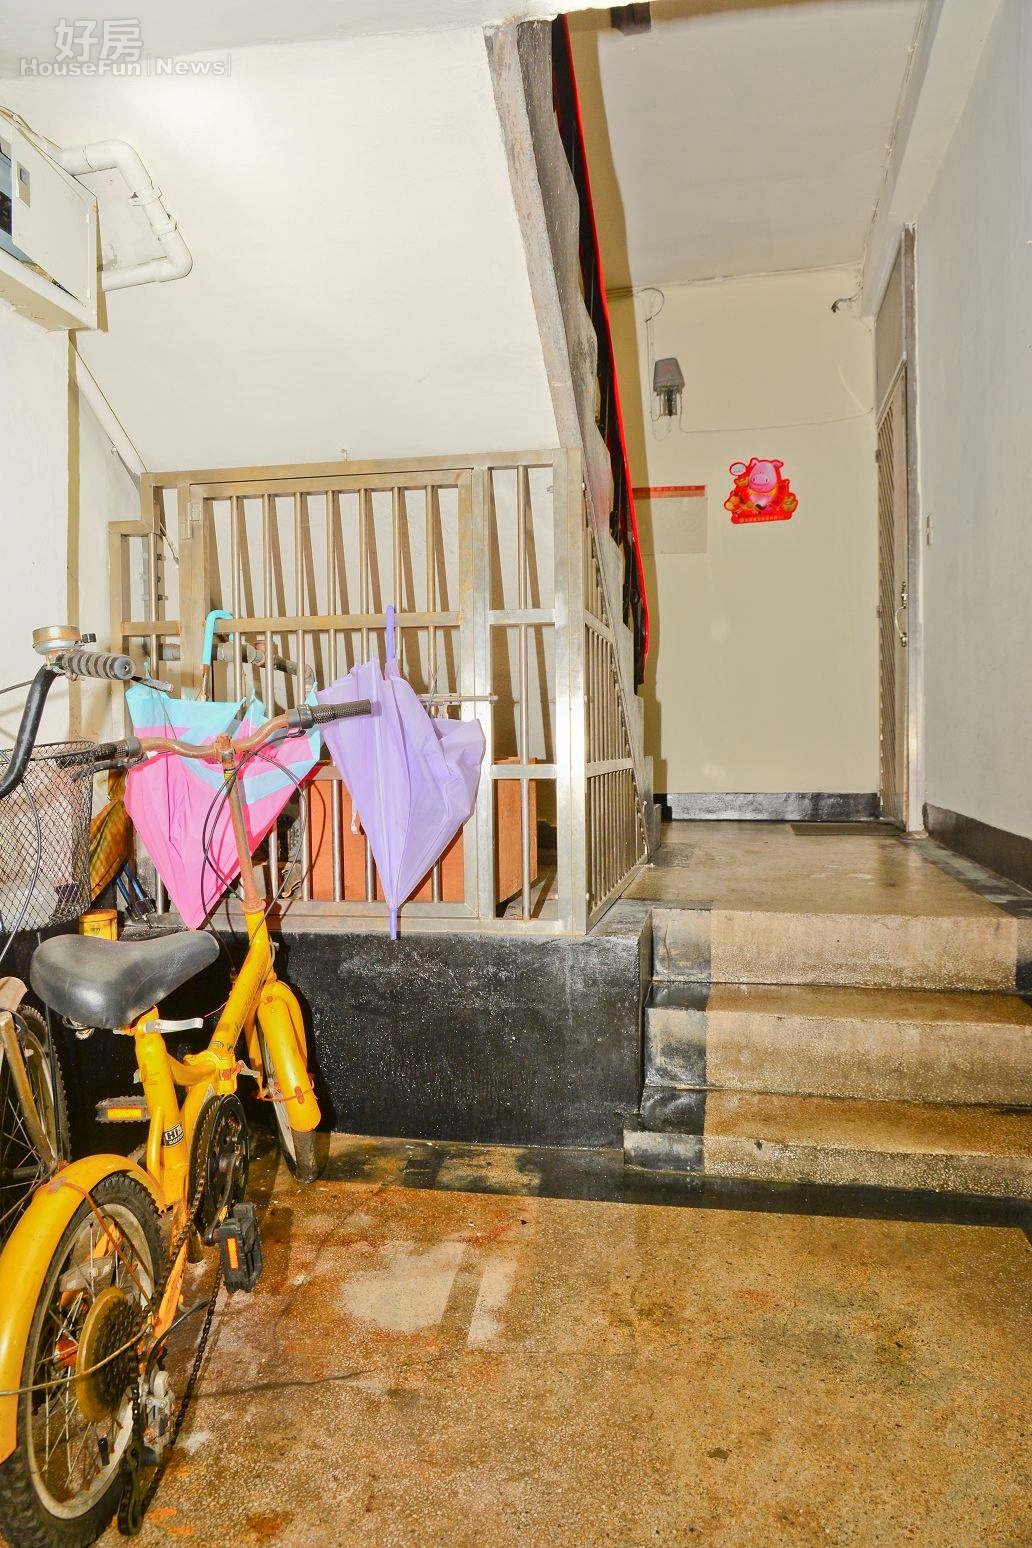 位於承德橋附近的老公寓，只有樓梯沒有電梯，對於年老的居民而言相當不便，且多數老公寓都有在一樓堆放機踏車或其他雜物的習慣，容易造成公安意外。（好房News記者 陳韋帆／攝影）